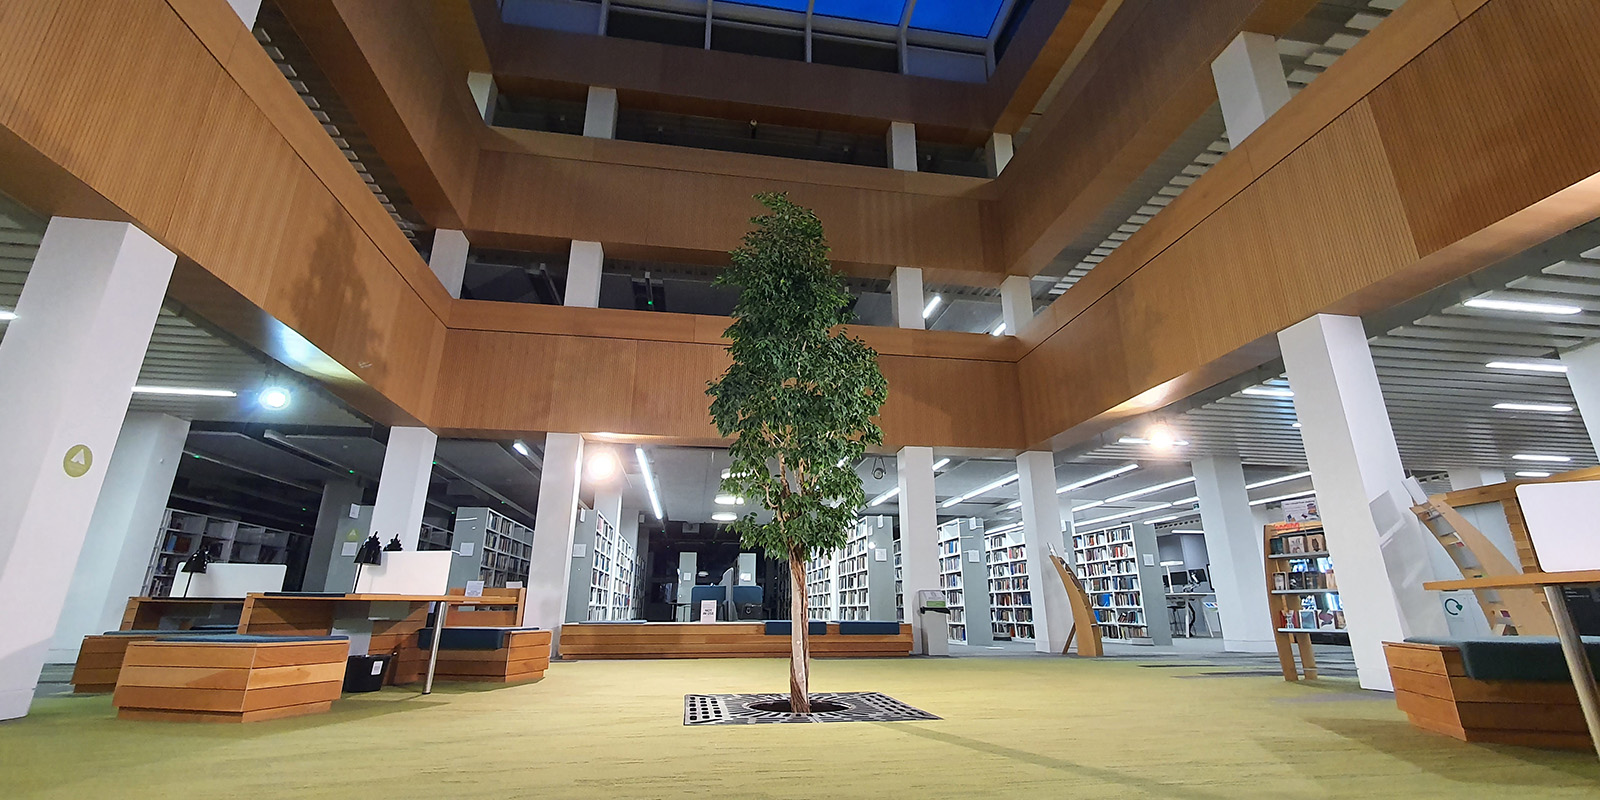 鶹Ƶ library foyer with the living tree in the centre.